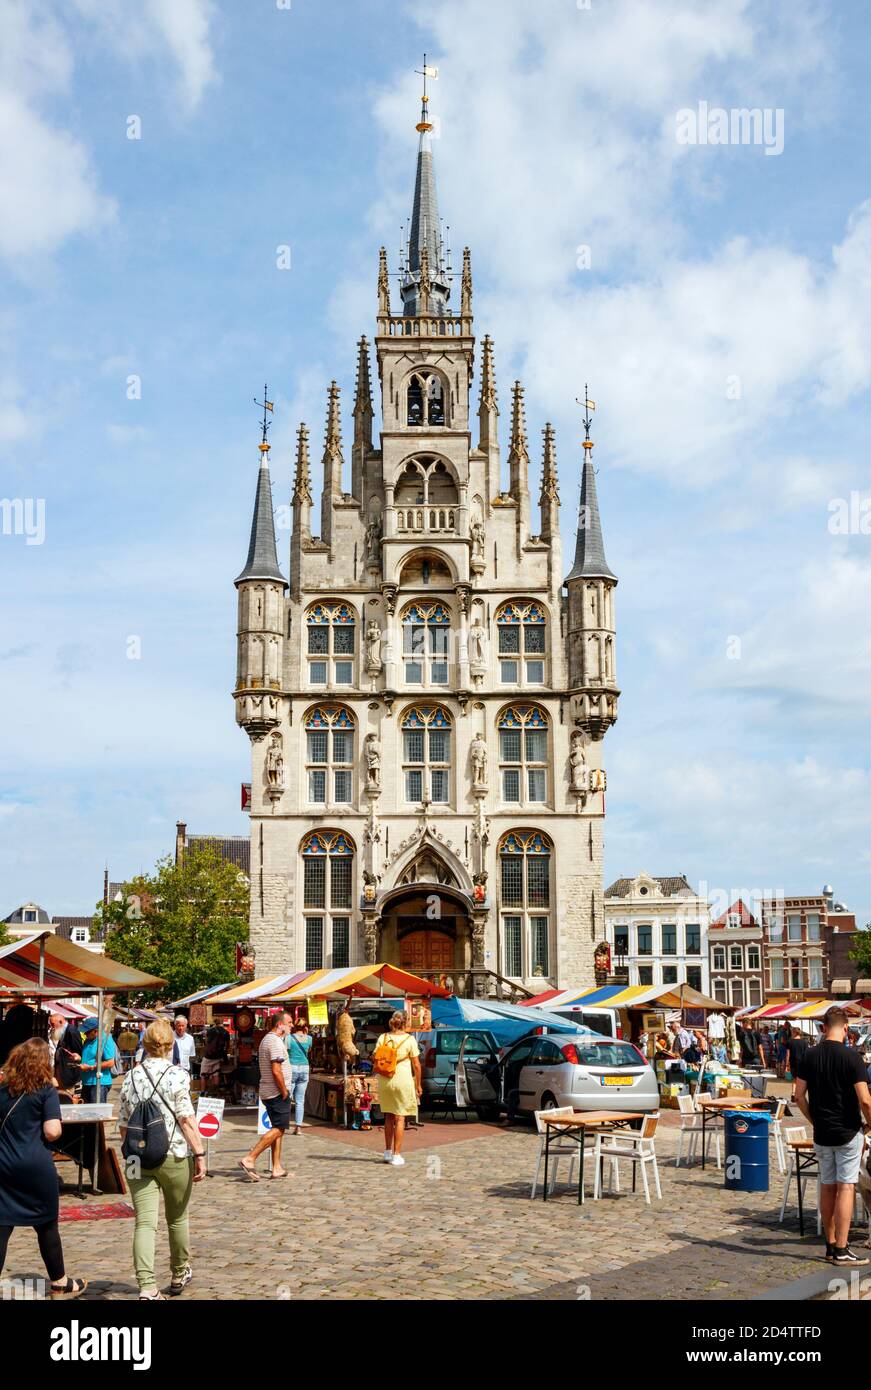 Vista sul centro storico di Gouda. Markt (mercato) con il famoso municipio, un esempio di architettura gotica, in un pomeriggio di sole. Holla sud Foto Stock